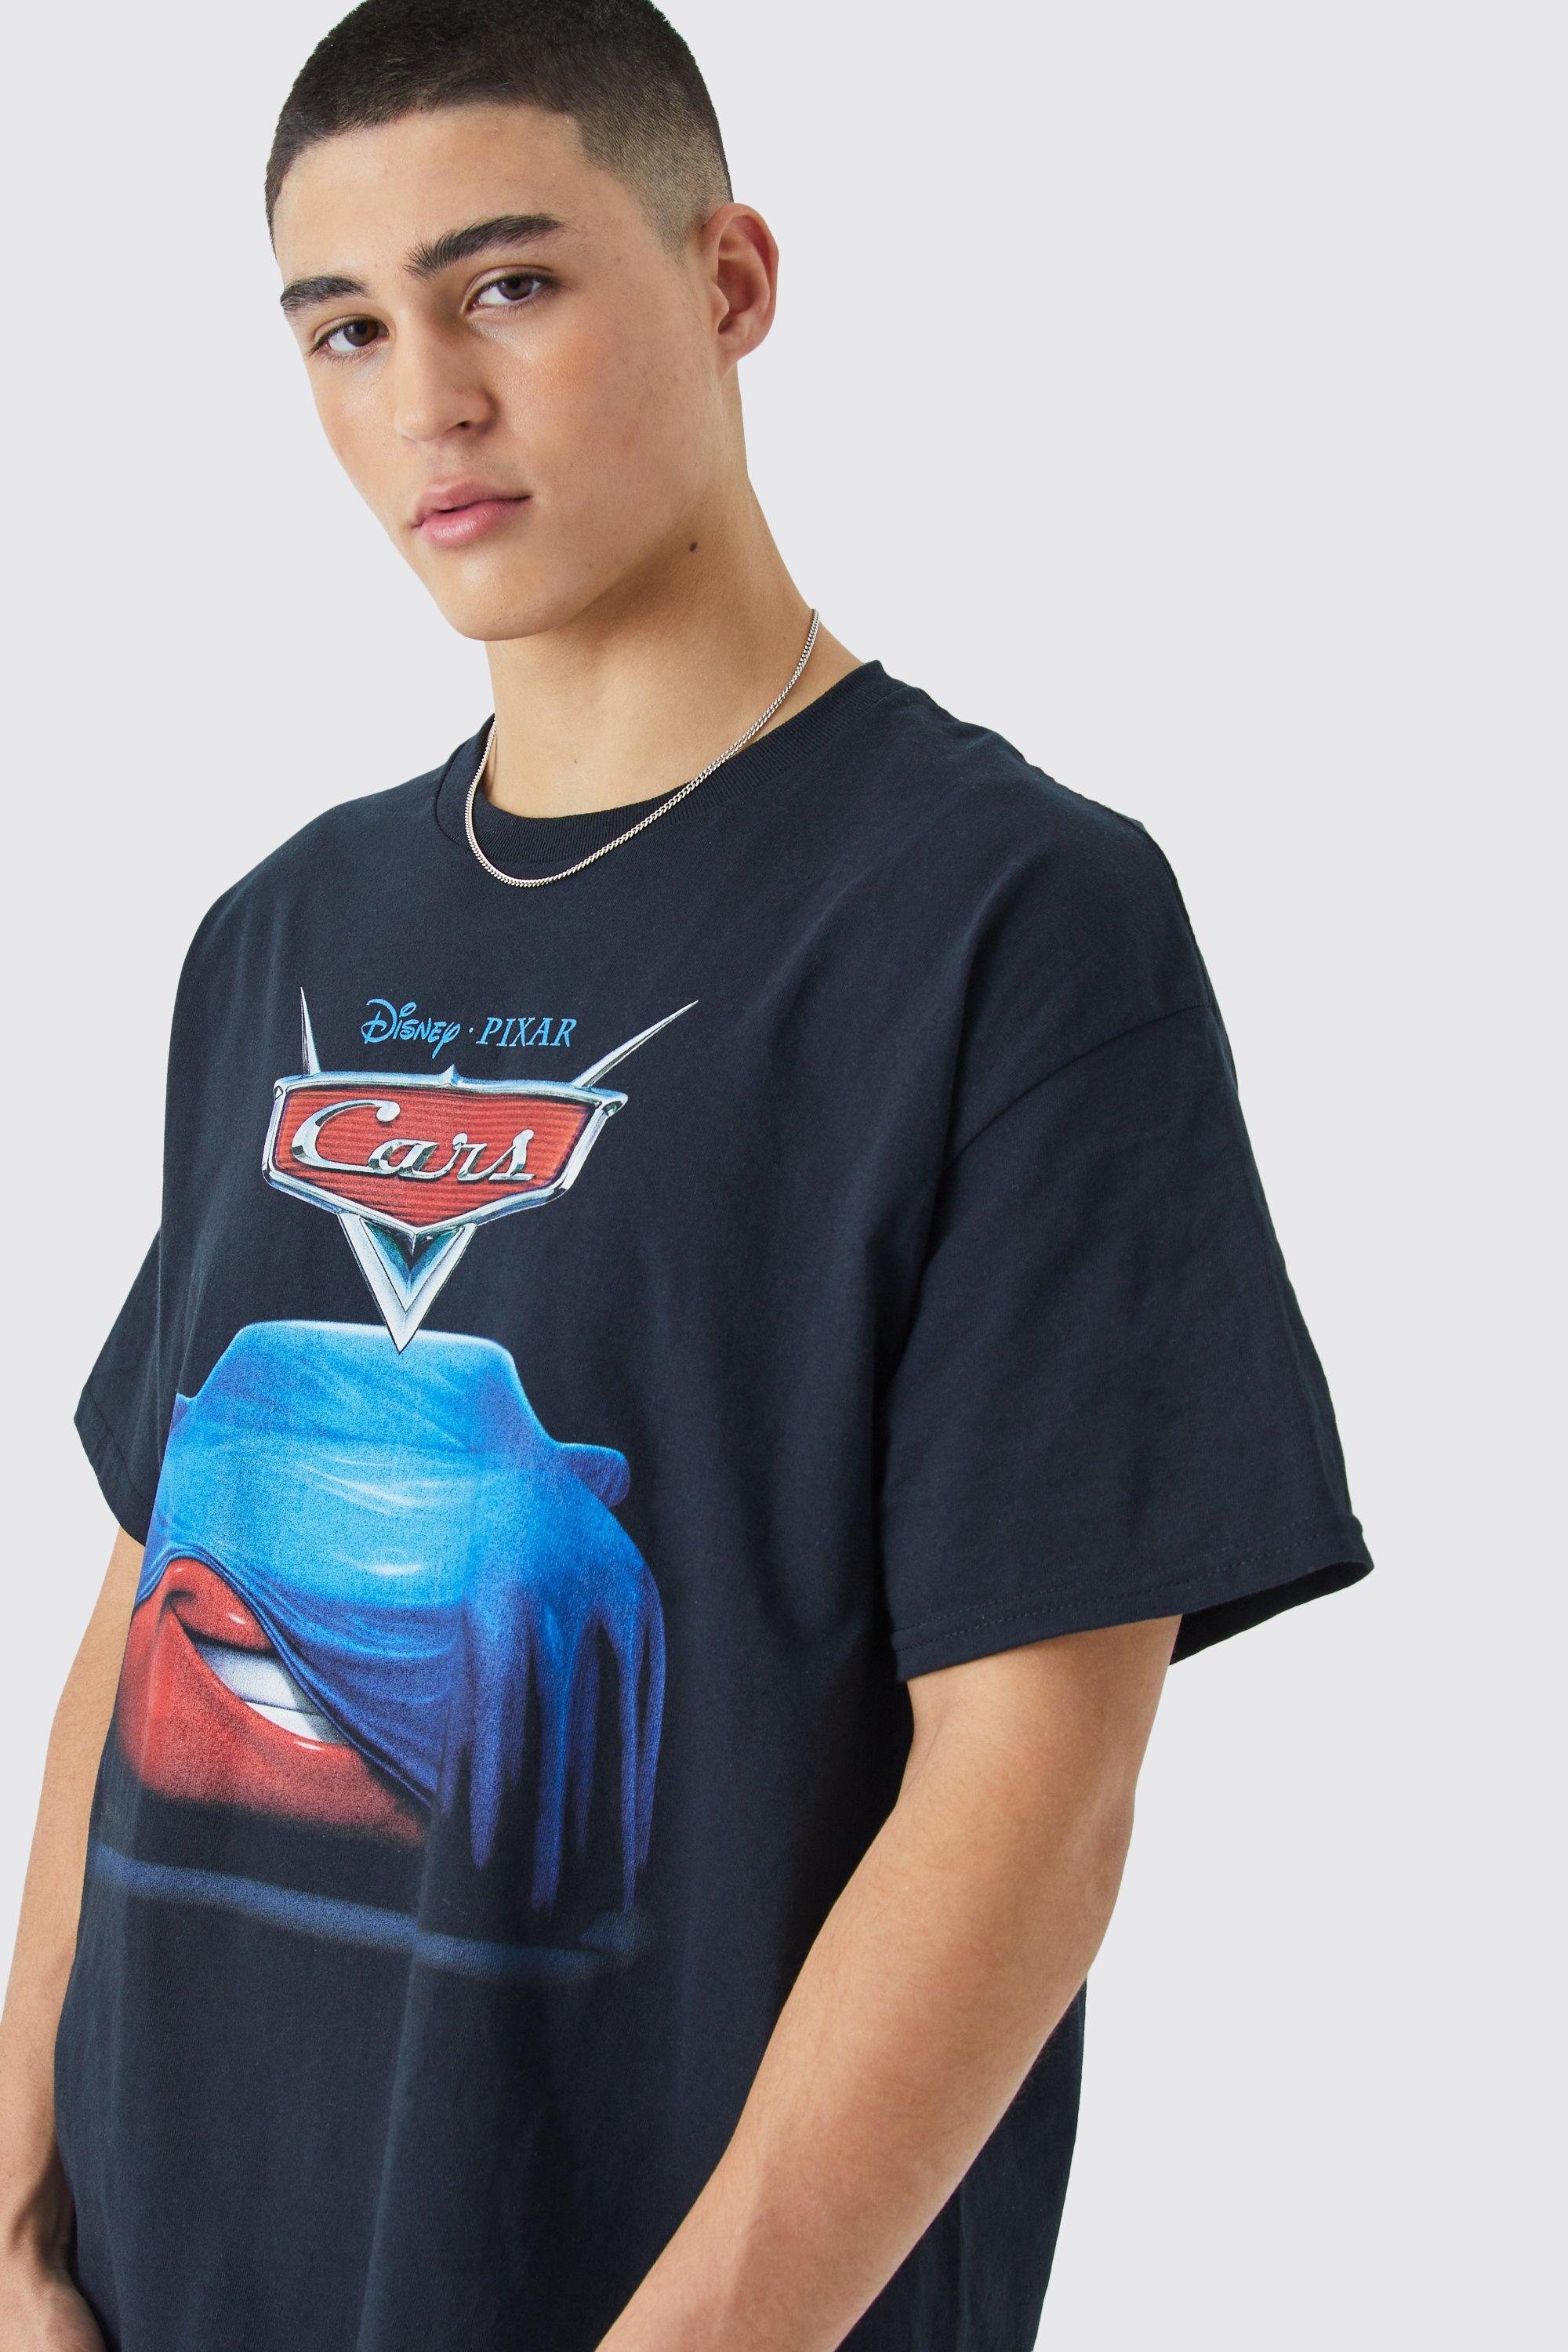 Disney Pixar Cars Lightning McQueen Portrait Sweatshirt 